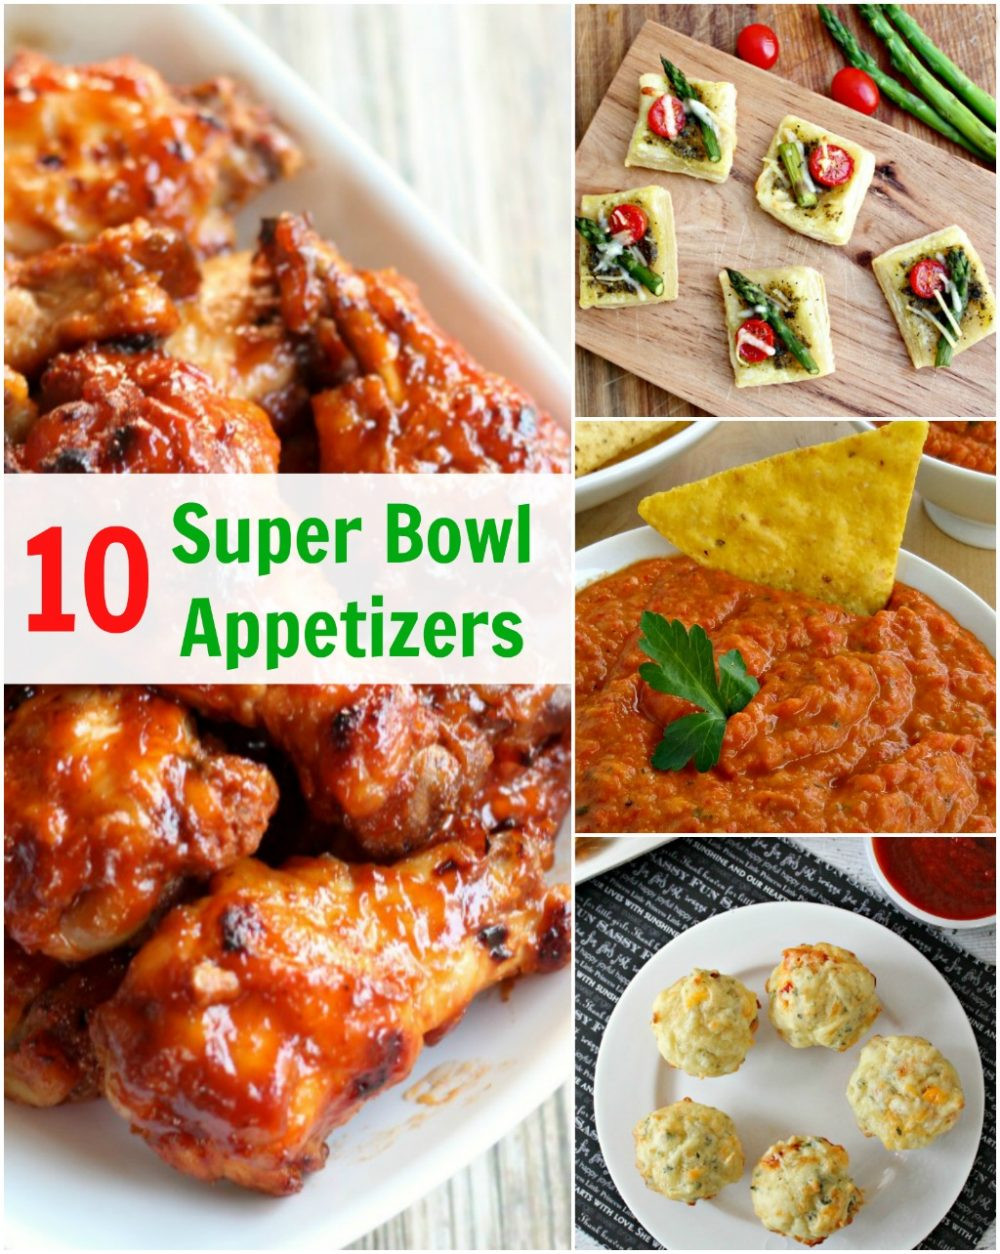 Super Bowl Appetizers Recipes
 10 Super Bowl Appetizers